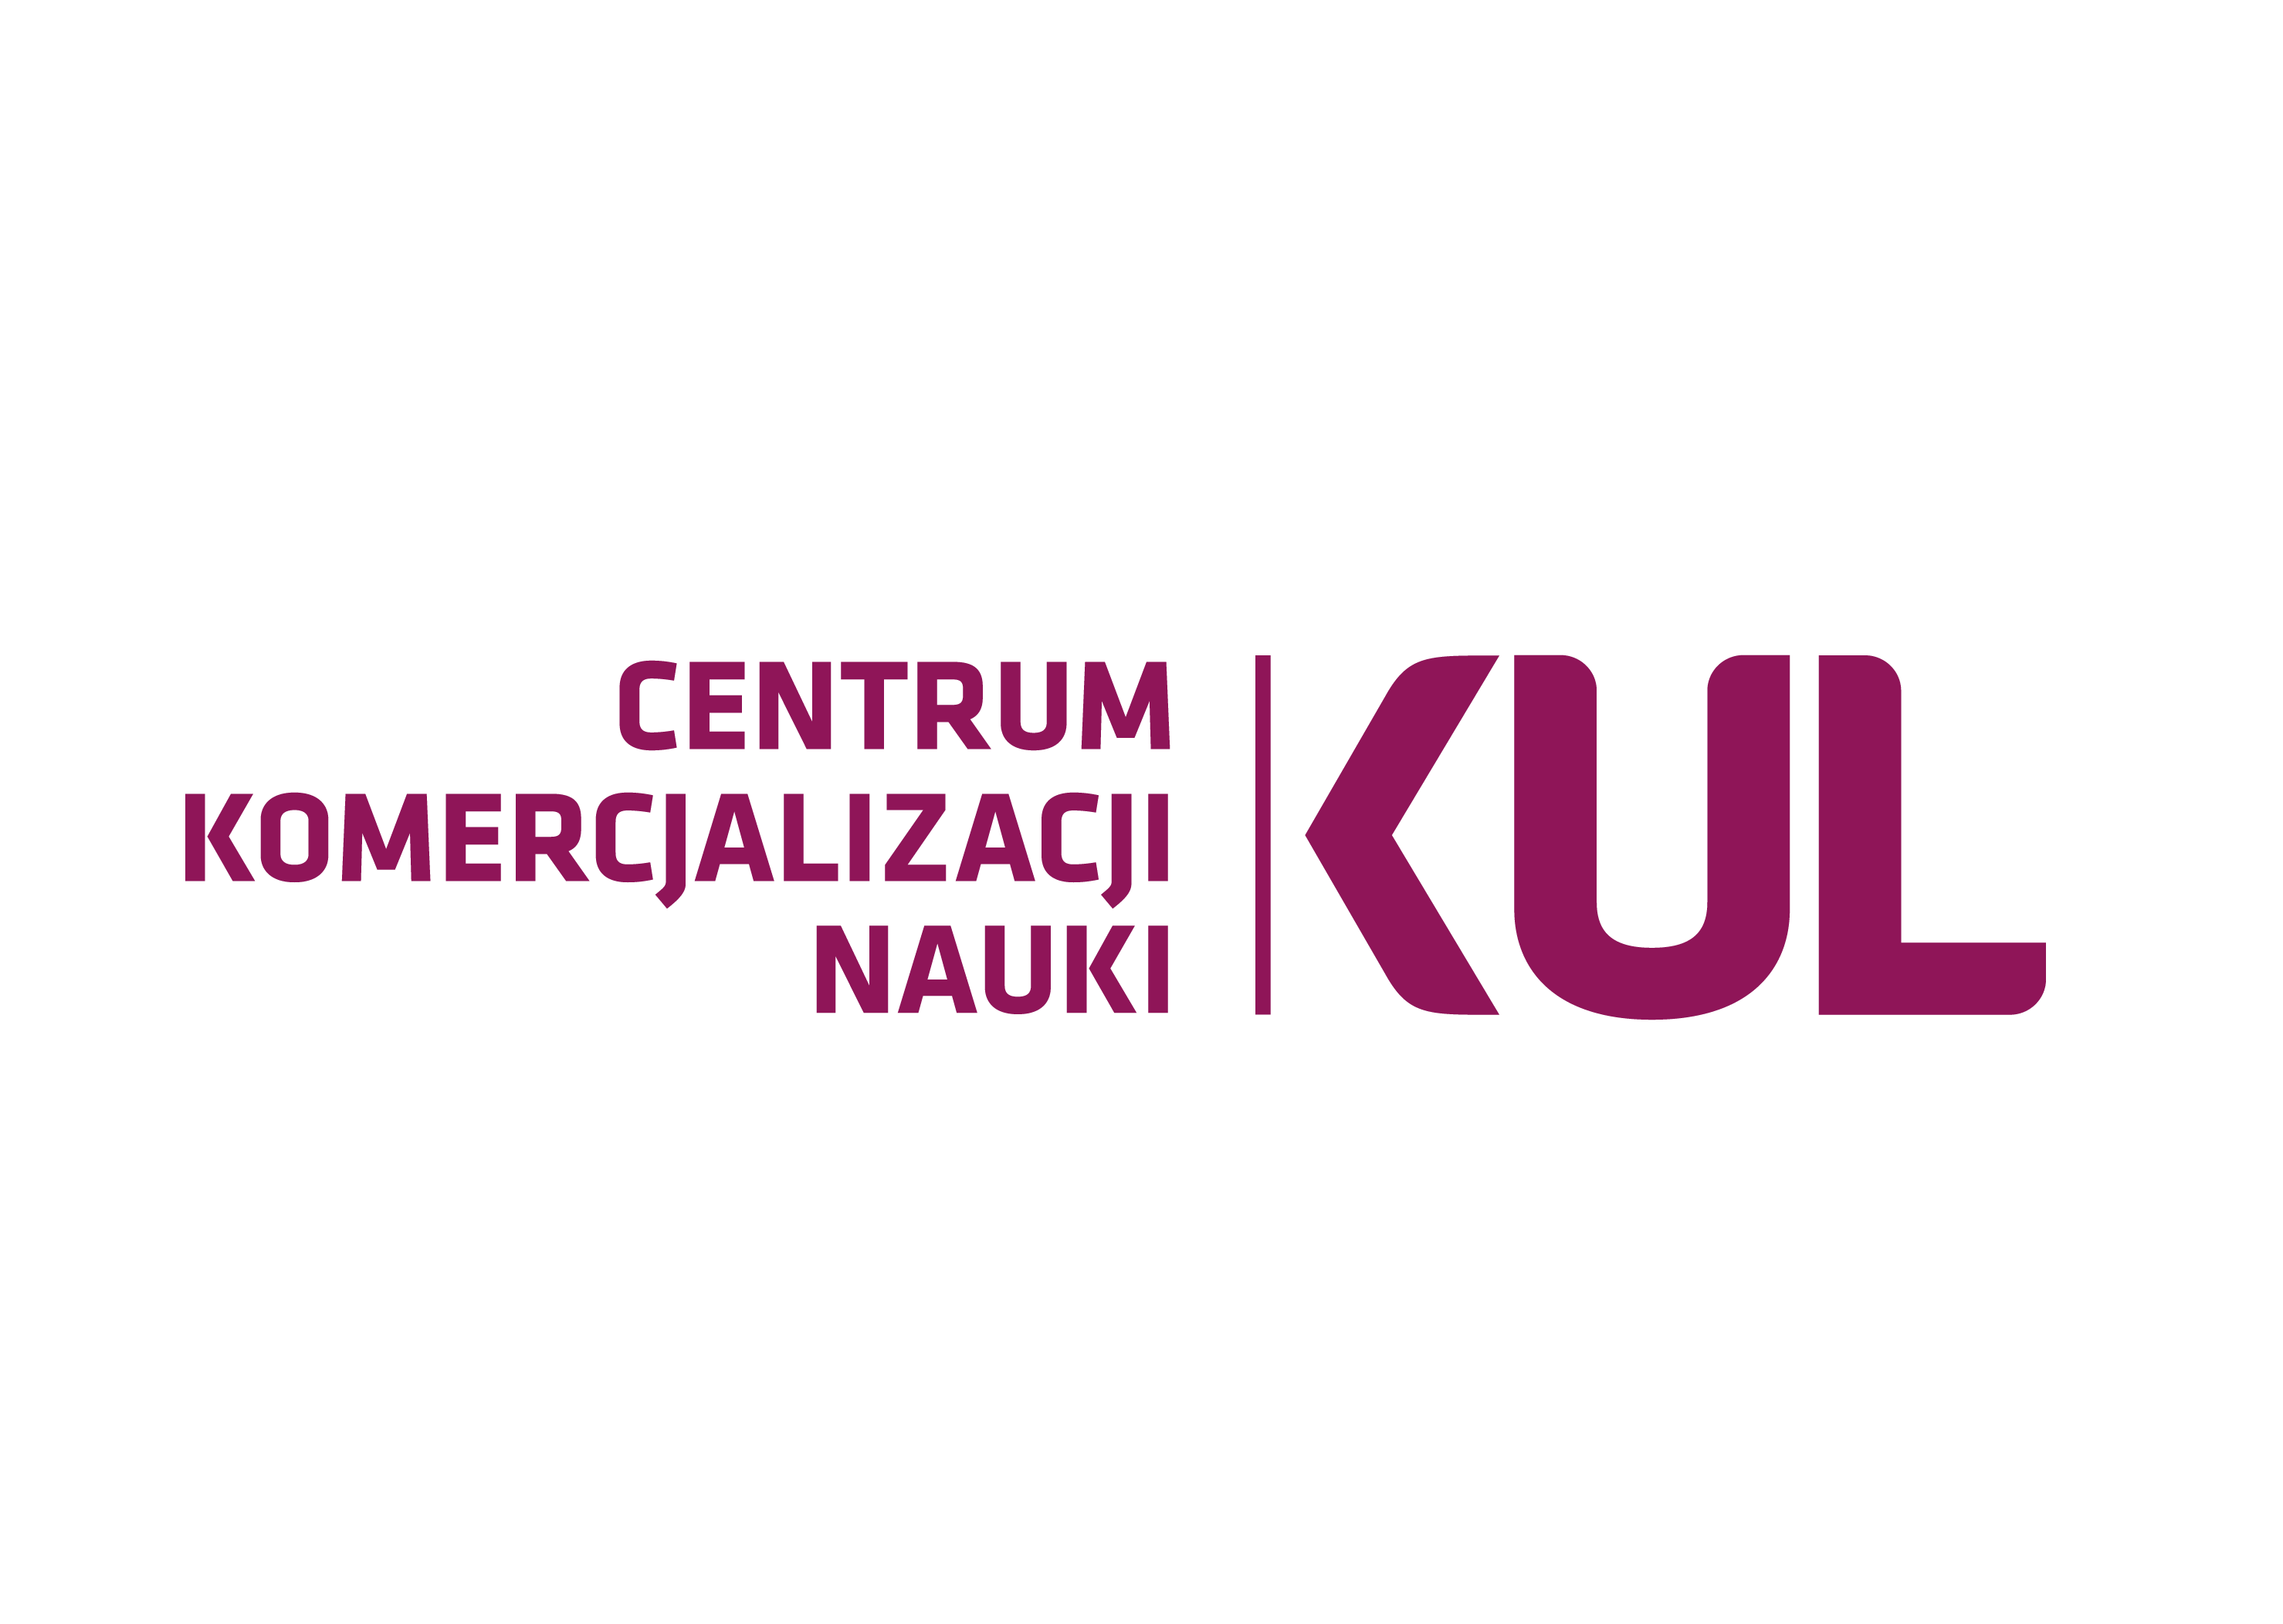 logo_kul_centrum_komercializacji_nauki-01